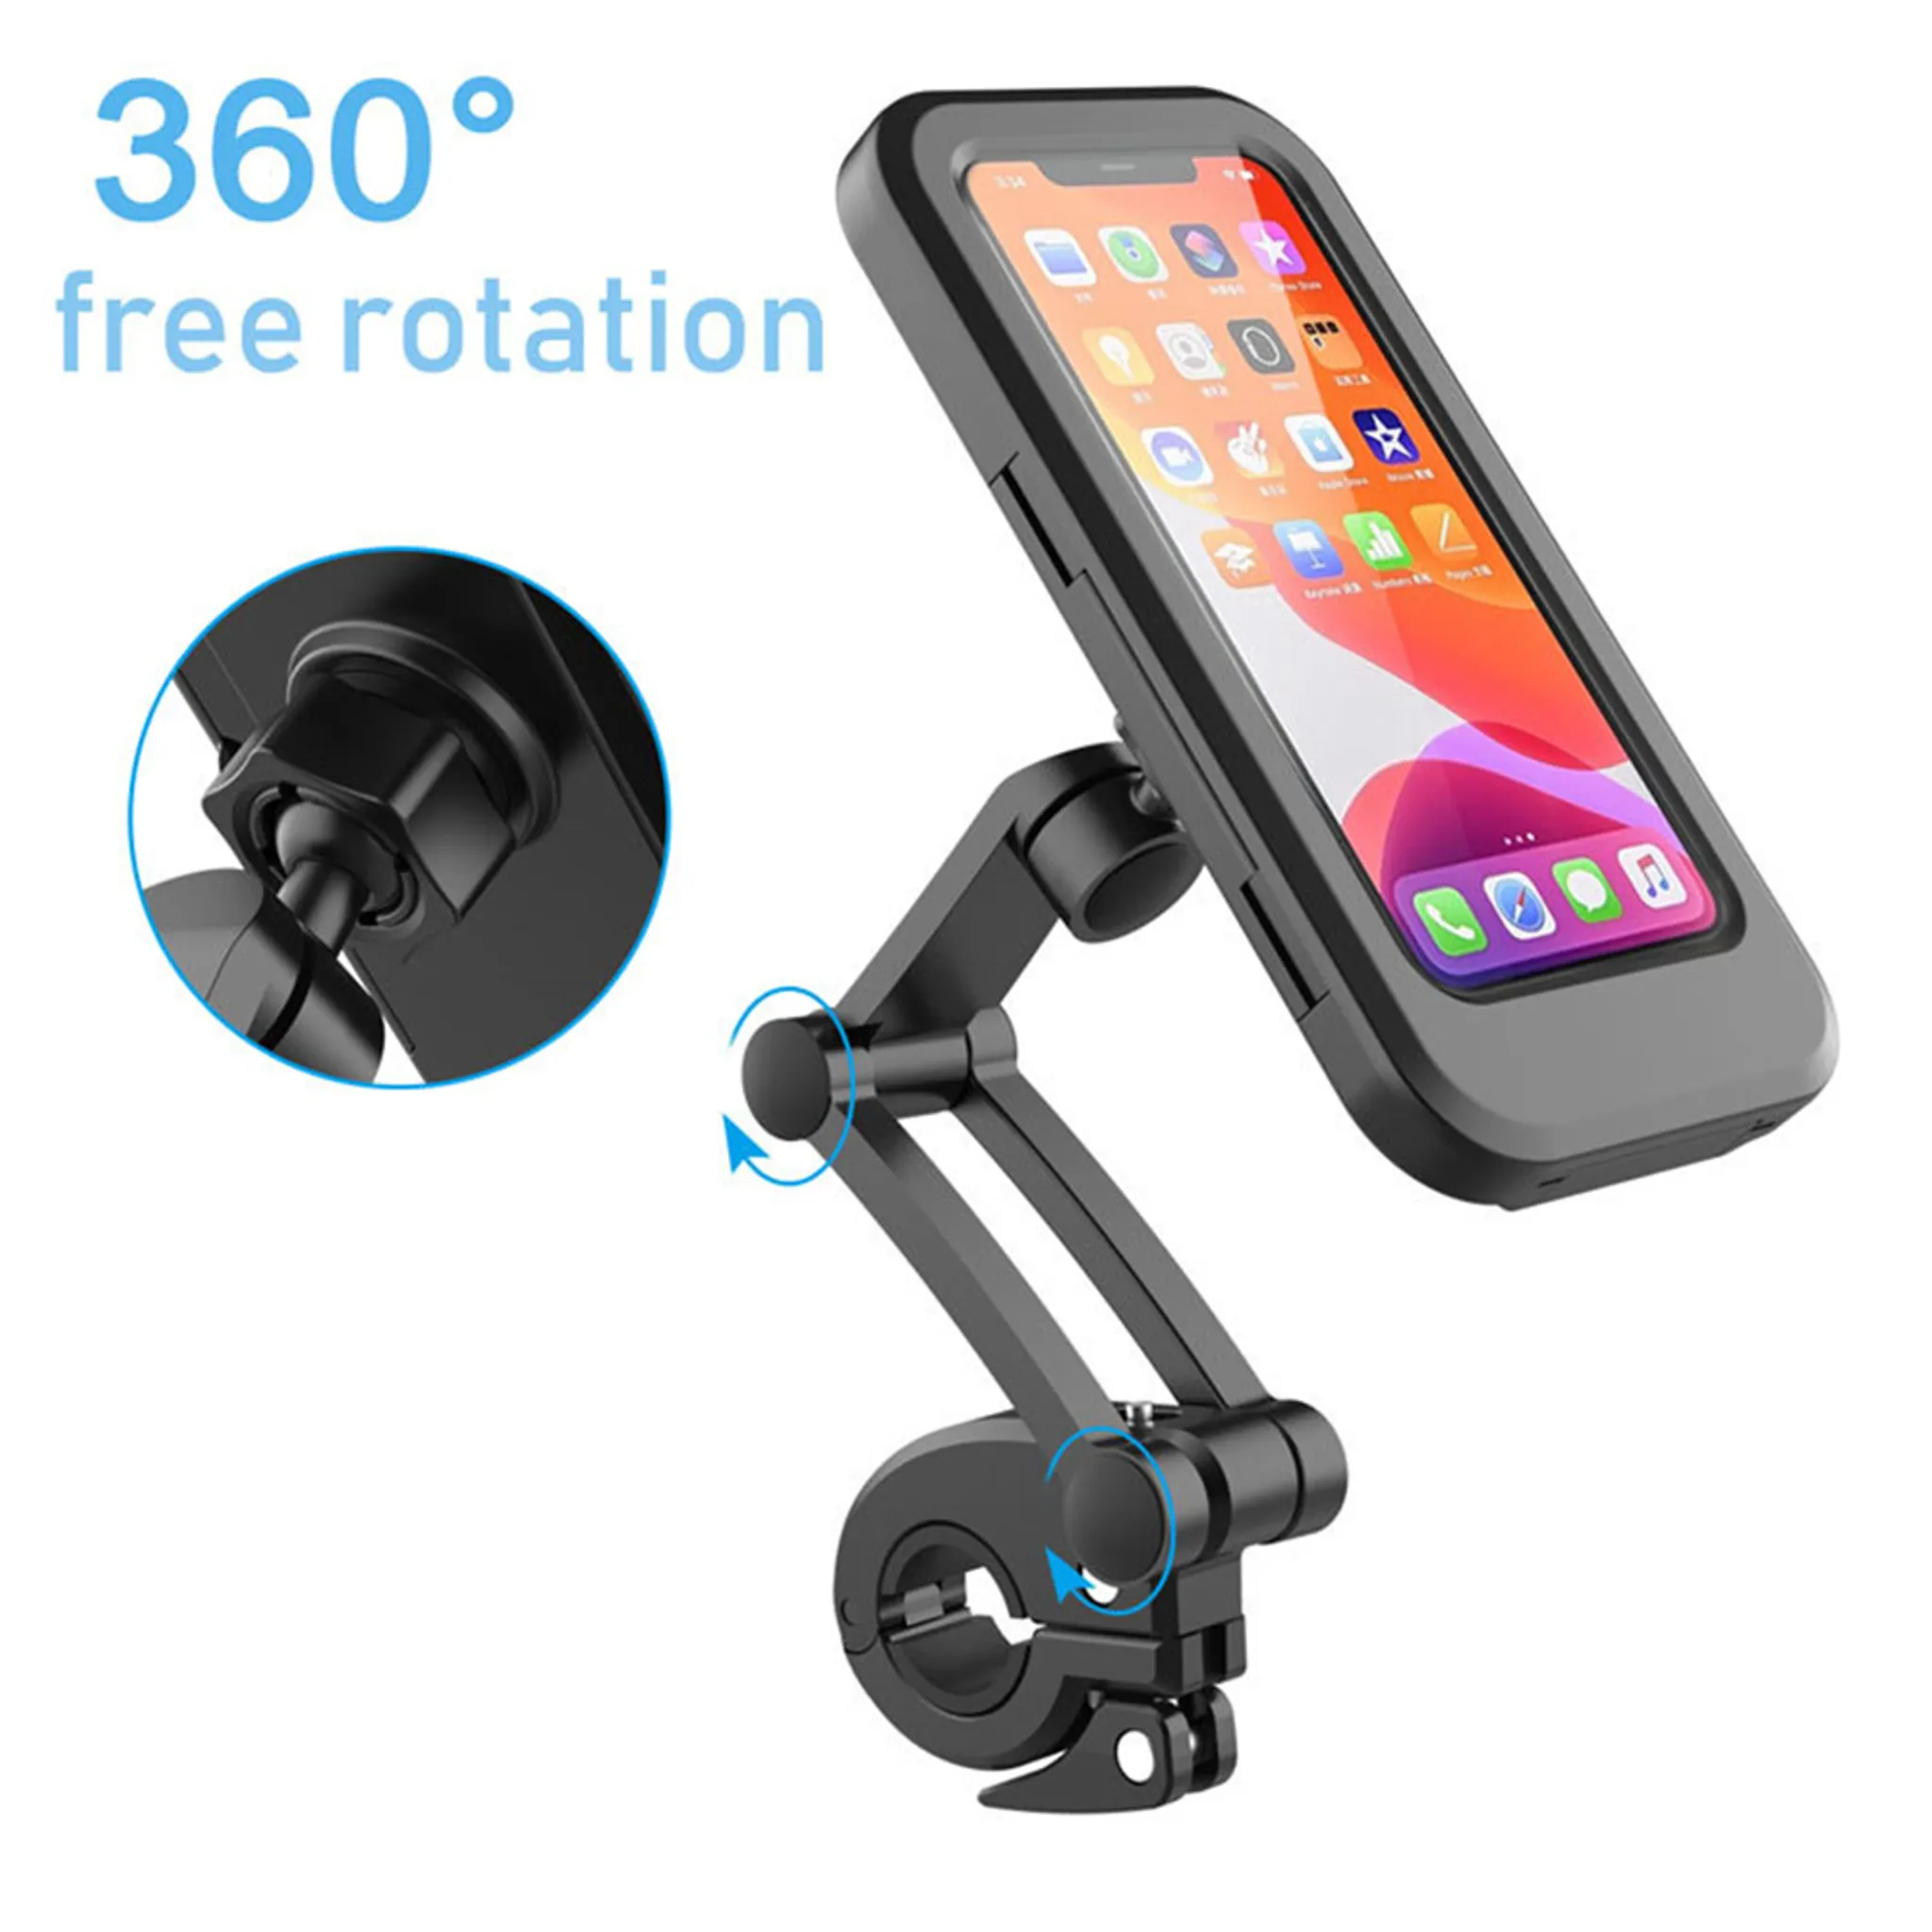 Handy Bis zu 6,6 Zoll Fahrrad Handyhalterung Wasserdicht Universal 360°Drehbar Motorrad-Halterungen mit Empfindlicher Touchscreen Handyhalter Fahrrad für iPhone XS Max/XR/Samsung Note 9/A9 Star 